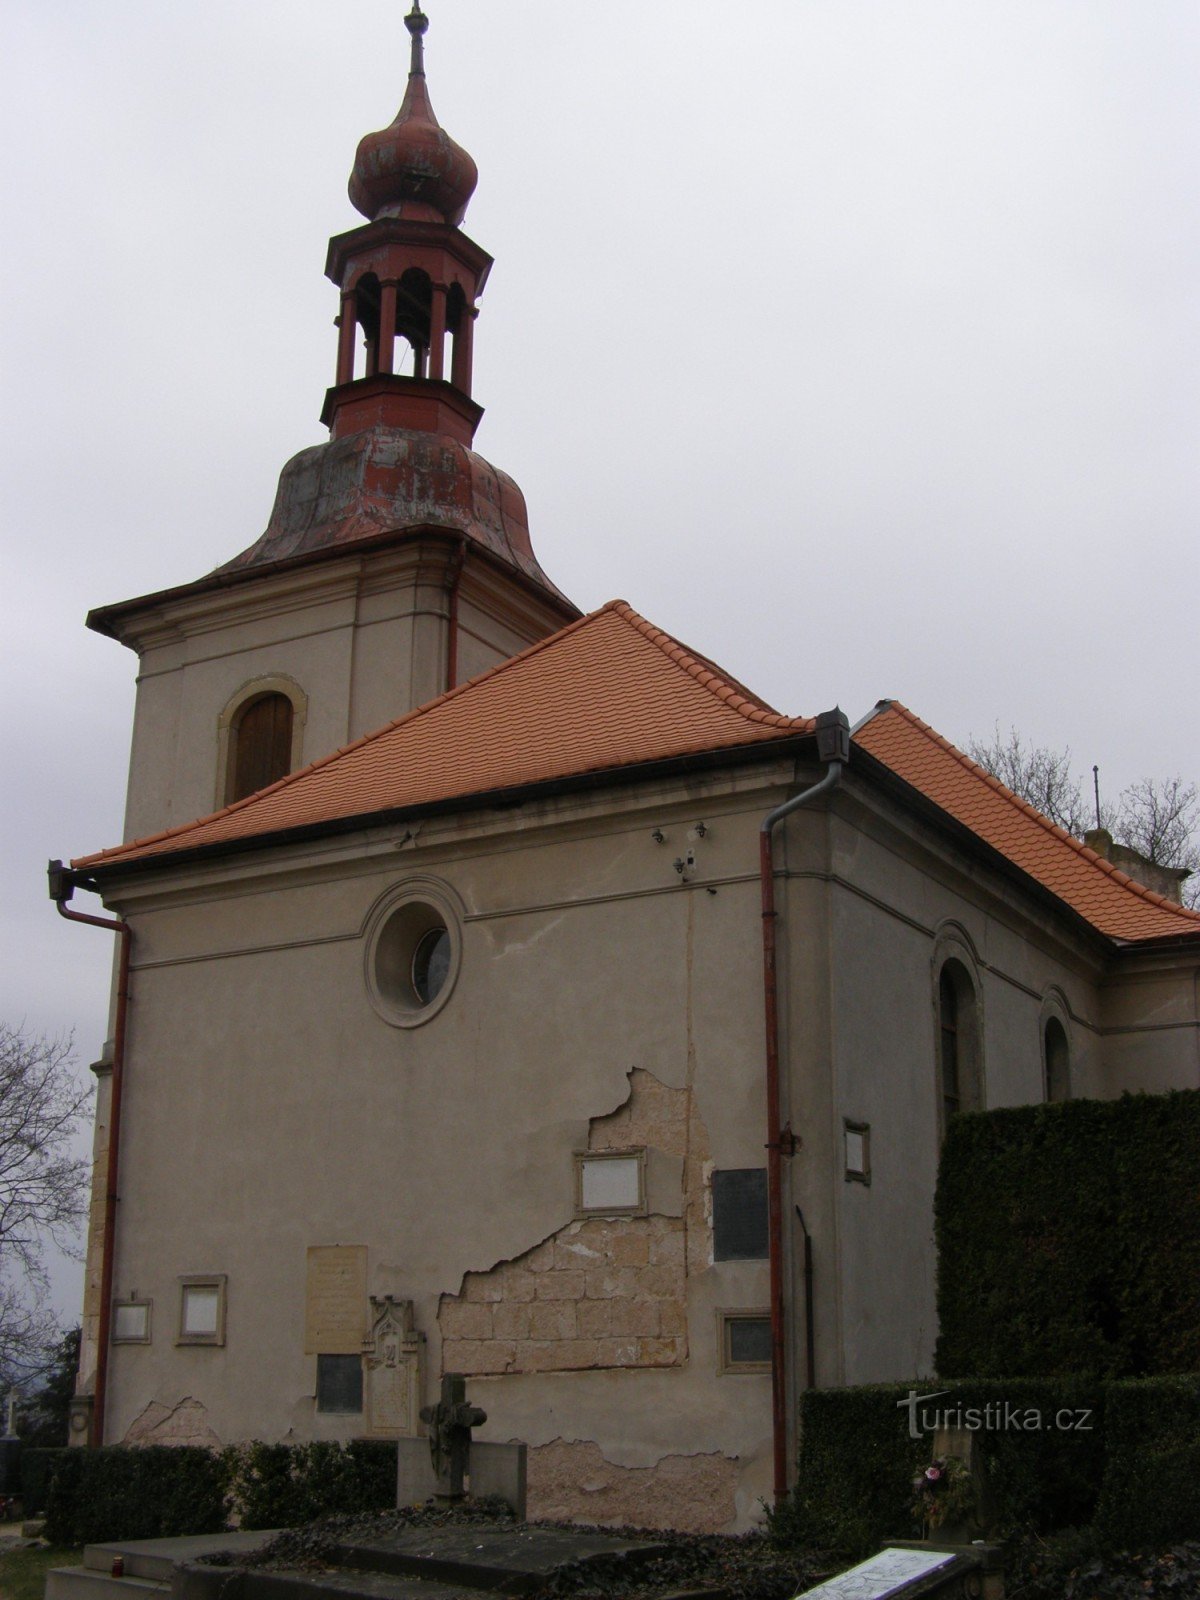 Gothard – cerkev sv. Gothard